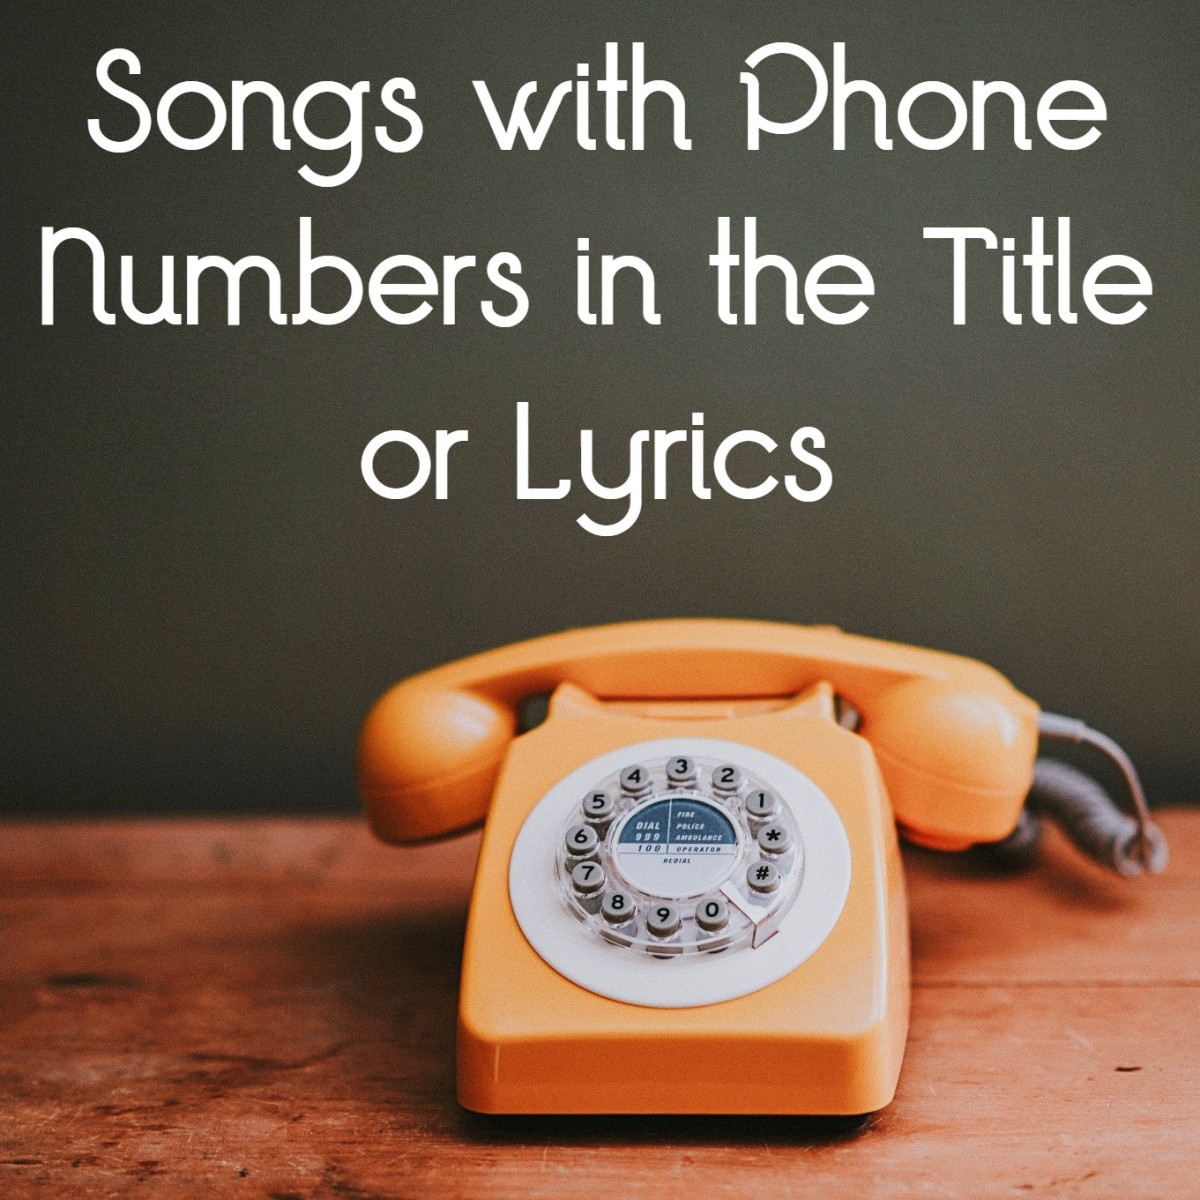 70 Phone Number Songs